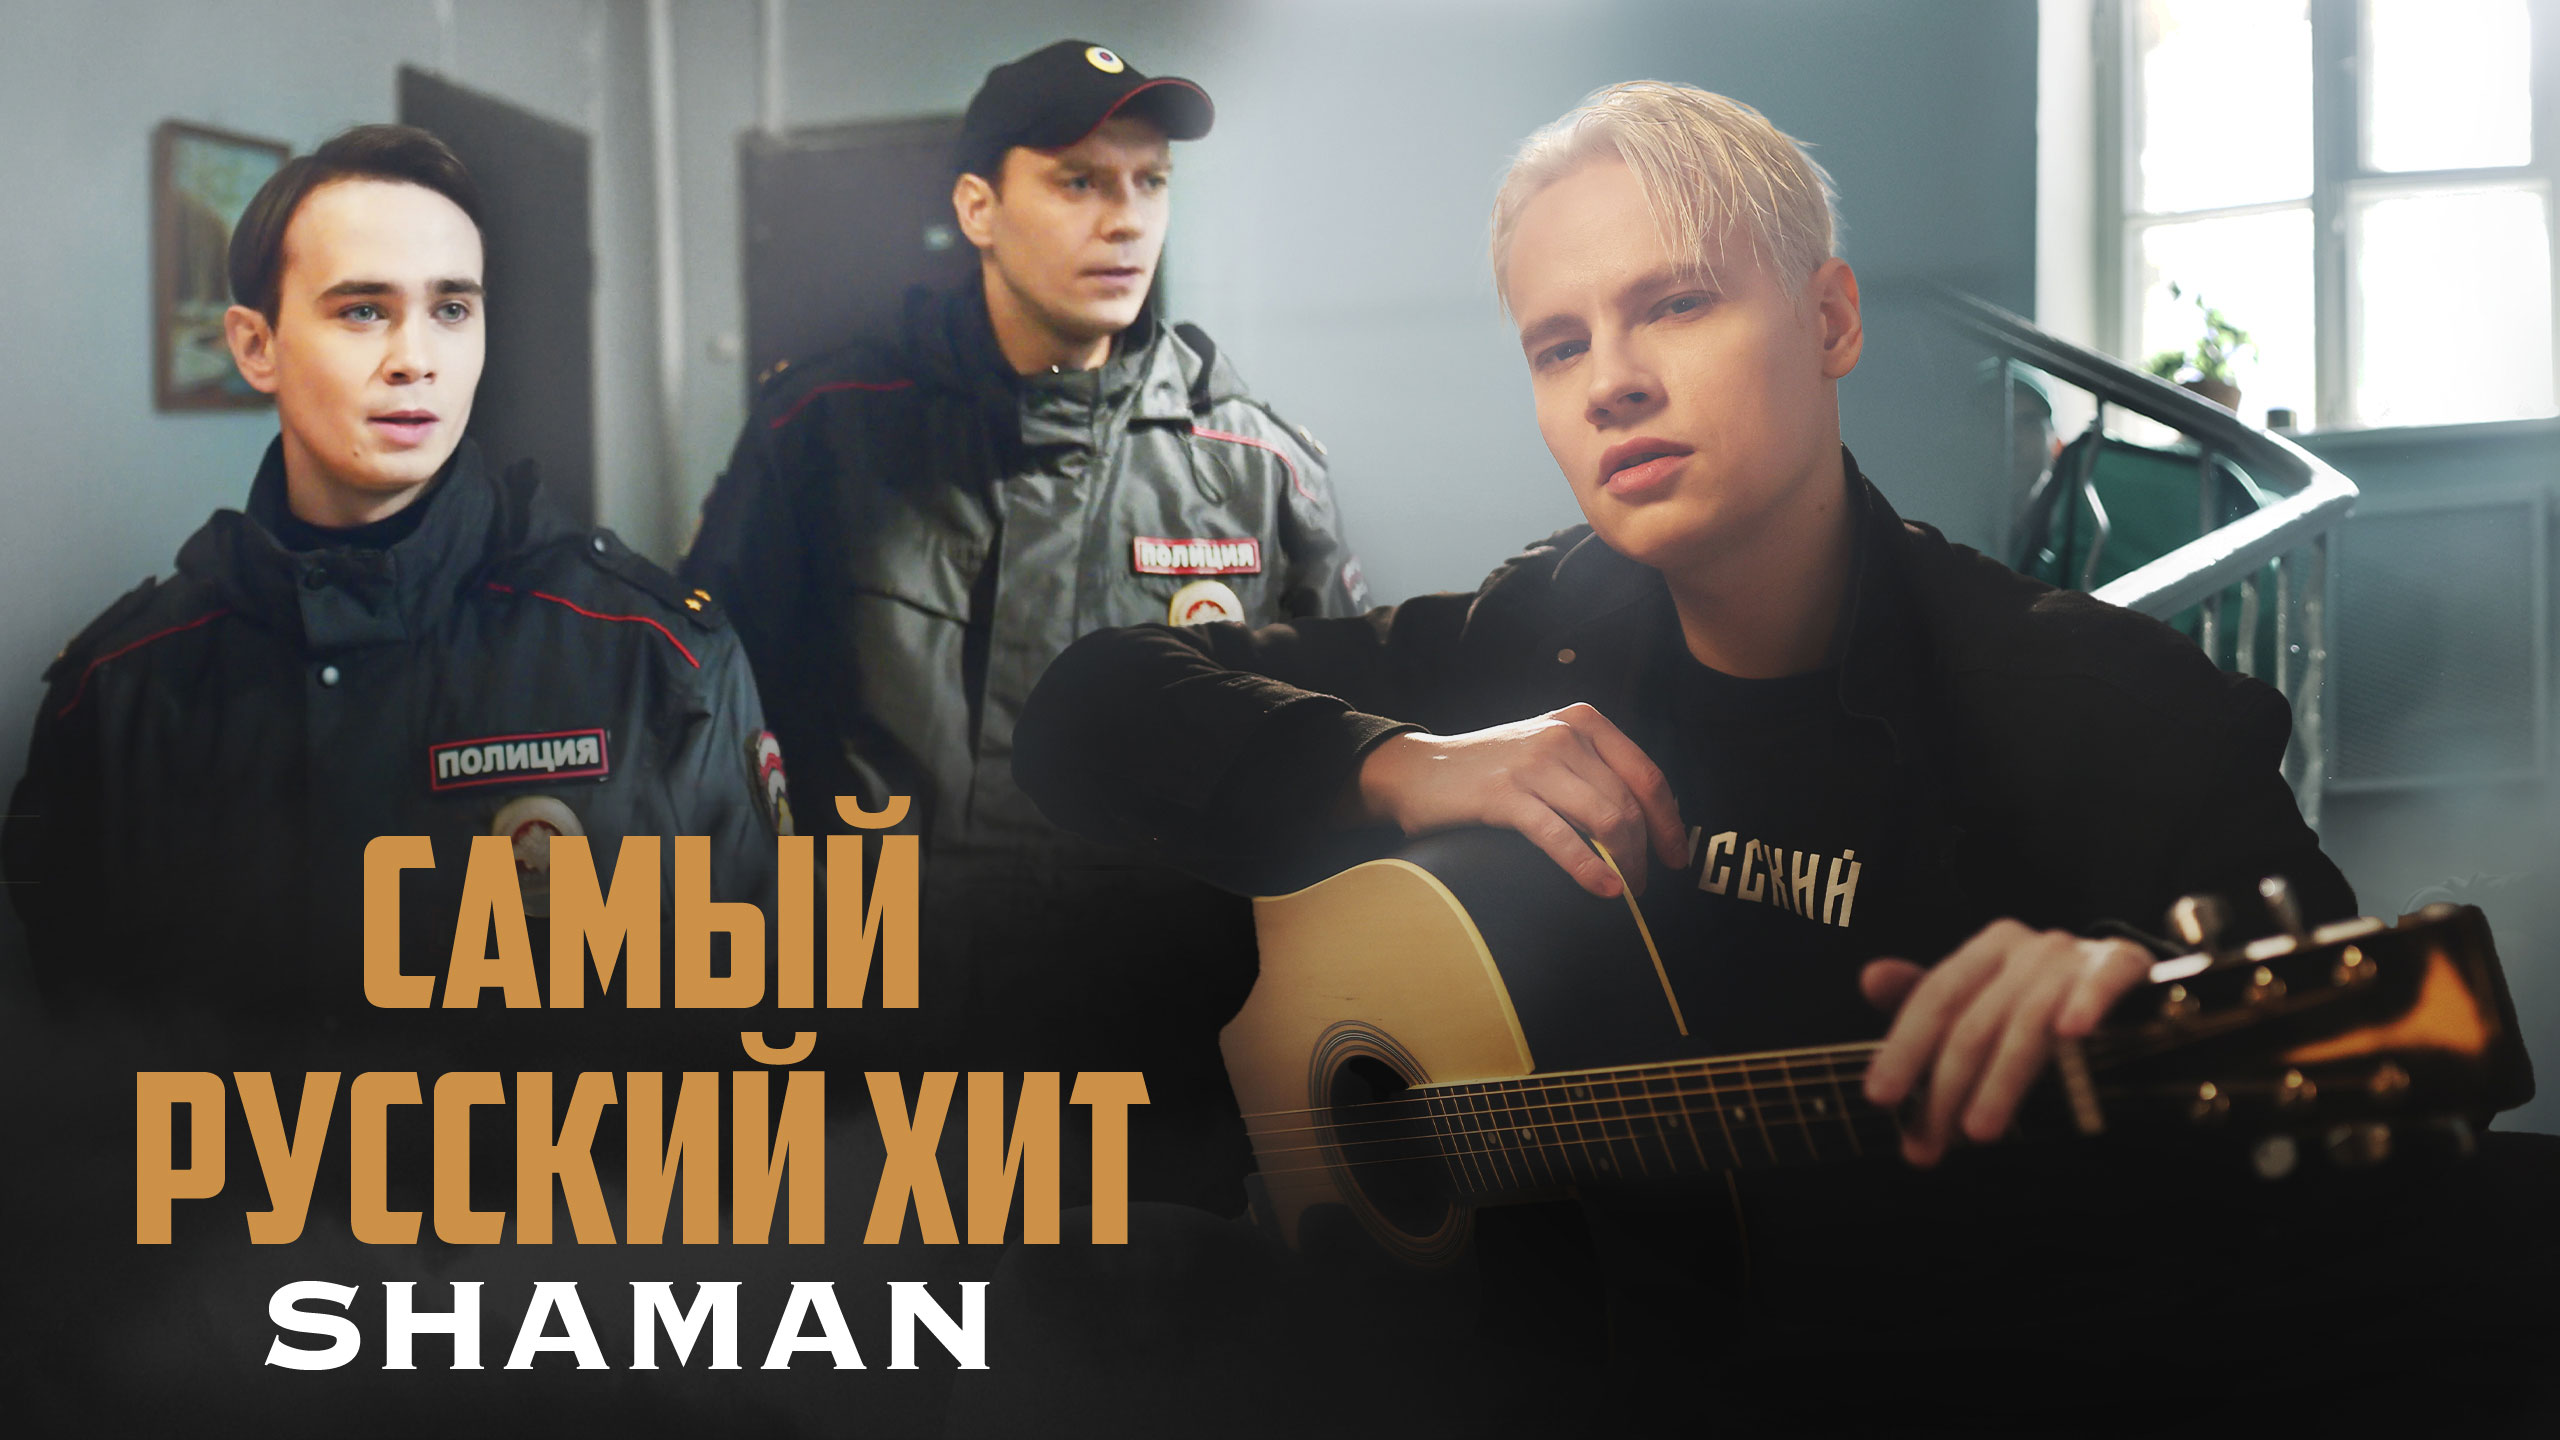 Шаман певец песня 22.03 24 слушать. Самый русский хит шаман. Shaman (певец). Шаман певец 2023. Шаман певец самый русский хит.